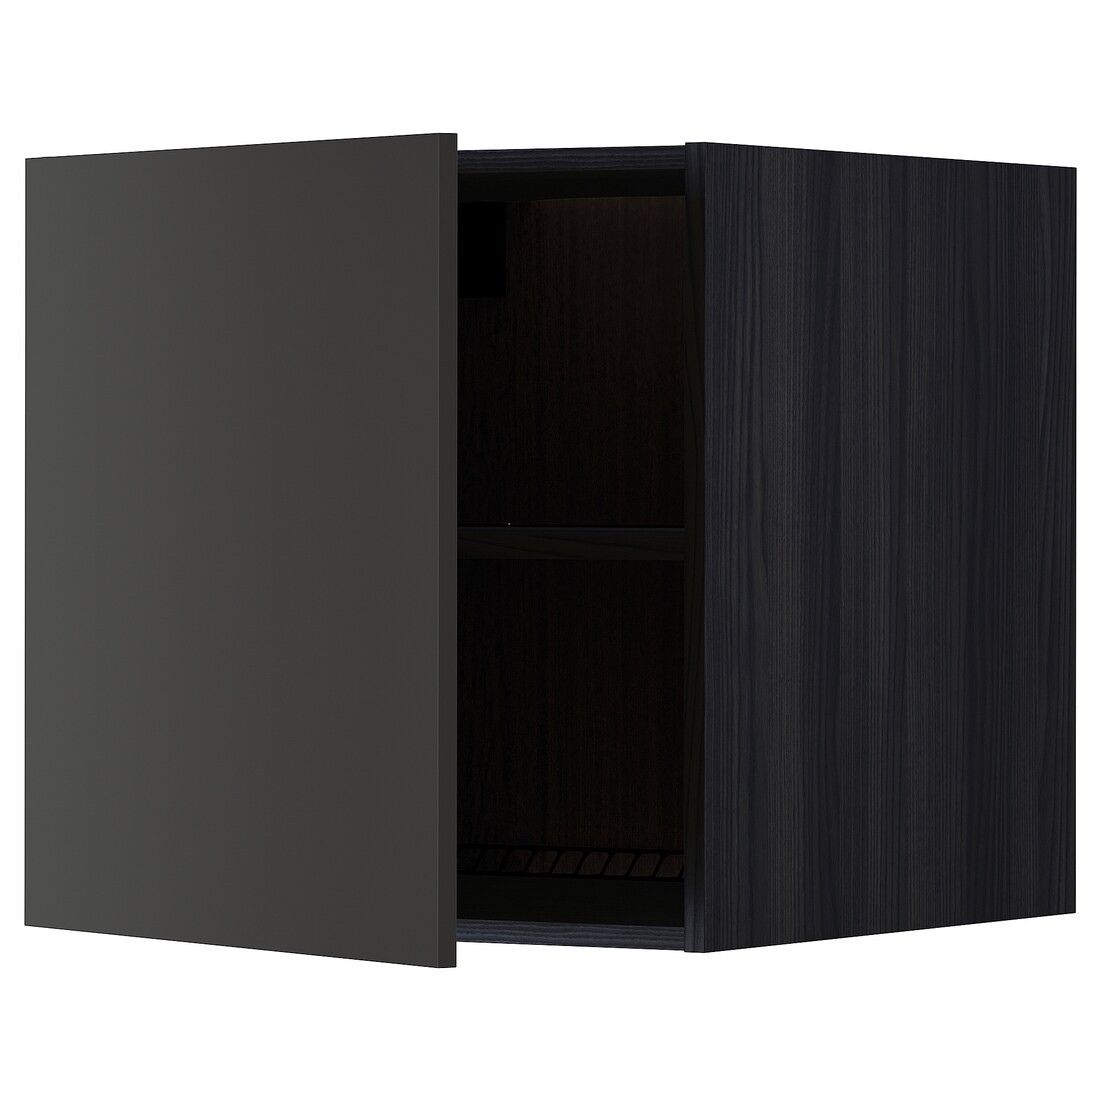 METOD МЕТОД Верхня шафа для холодильника / морозильника, чорний / Nickebo матовий антрацит, 60x60 см